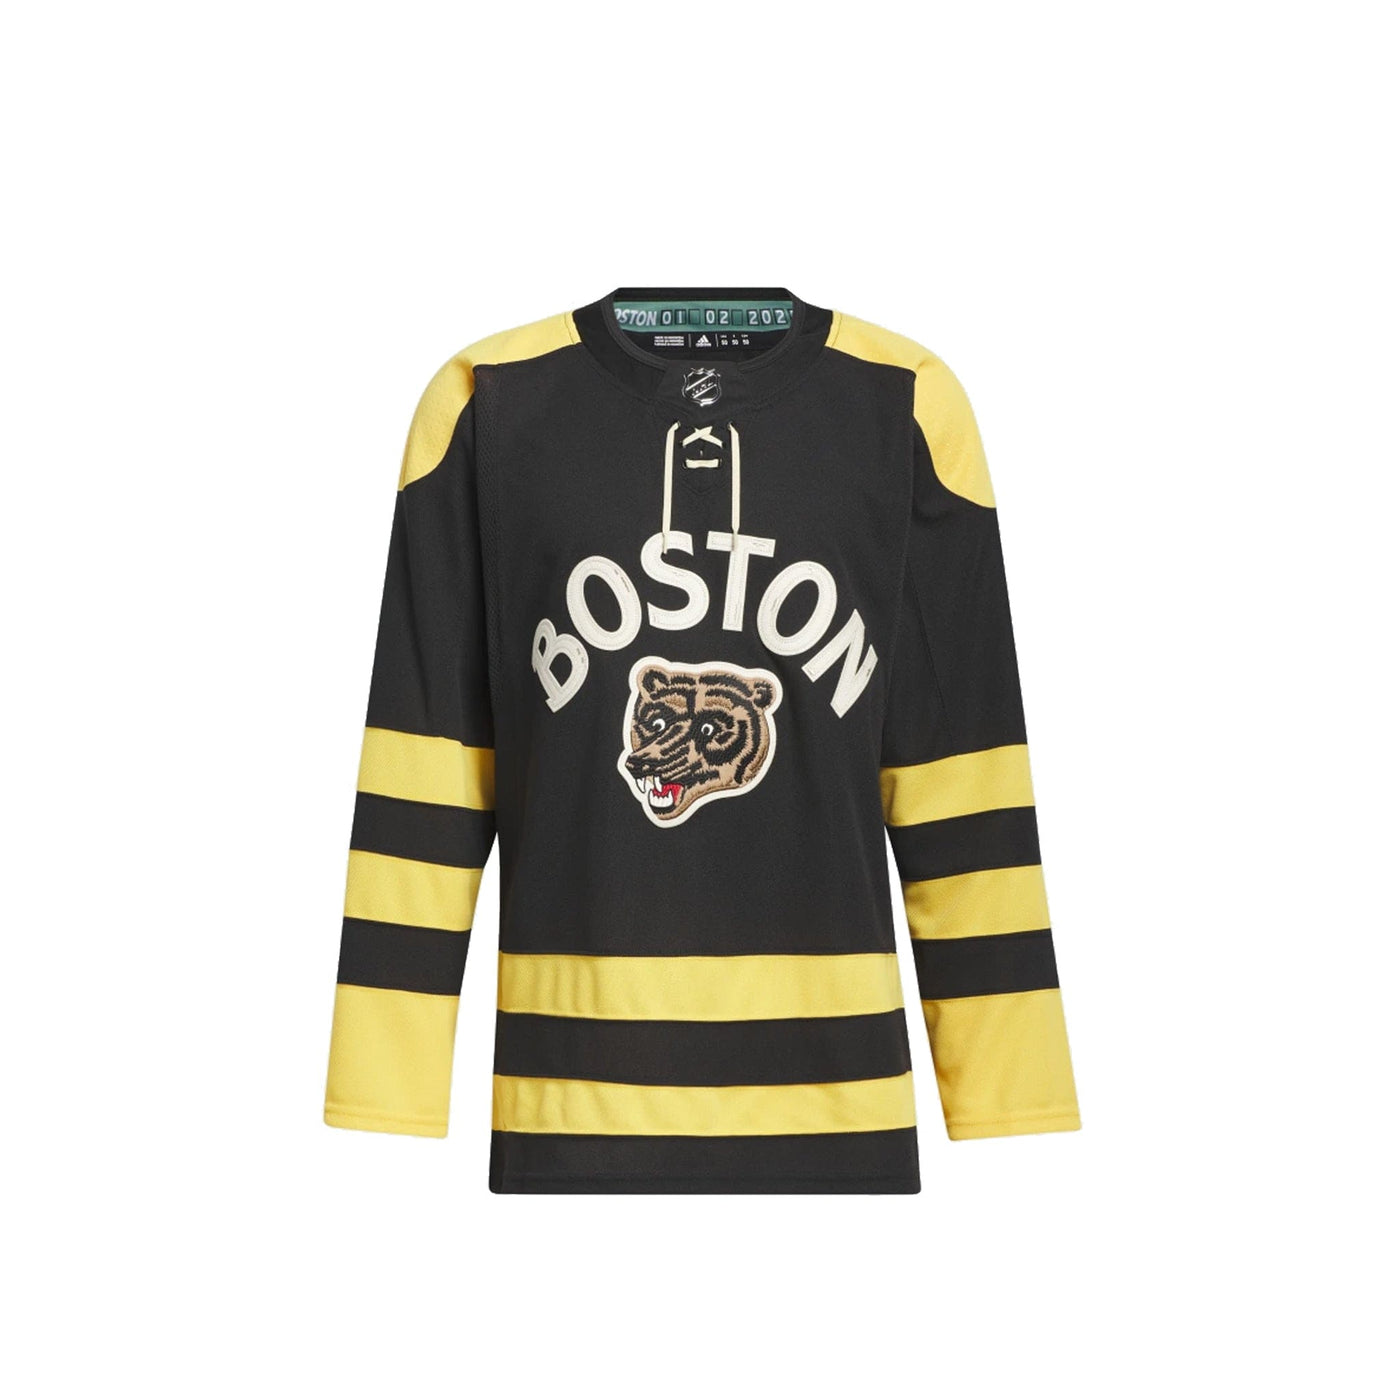 Bruins Authentic Winter Classic Wordmark Jersey